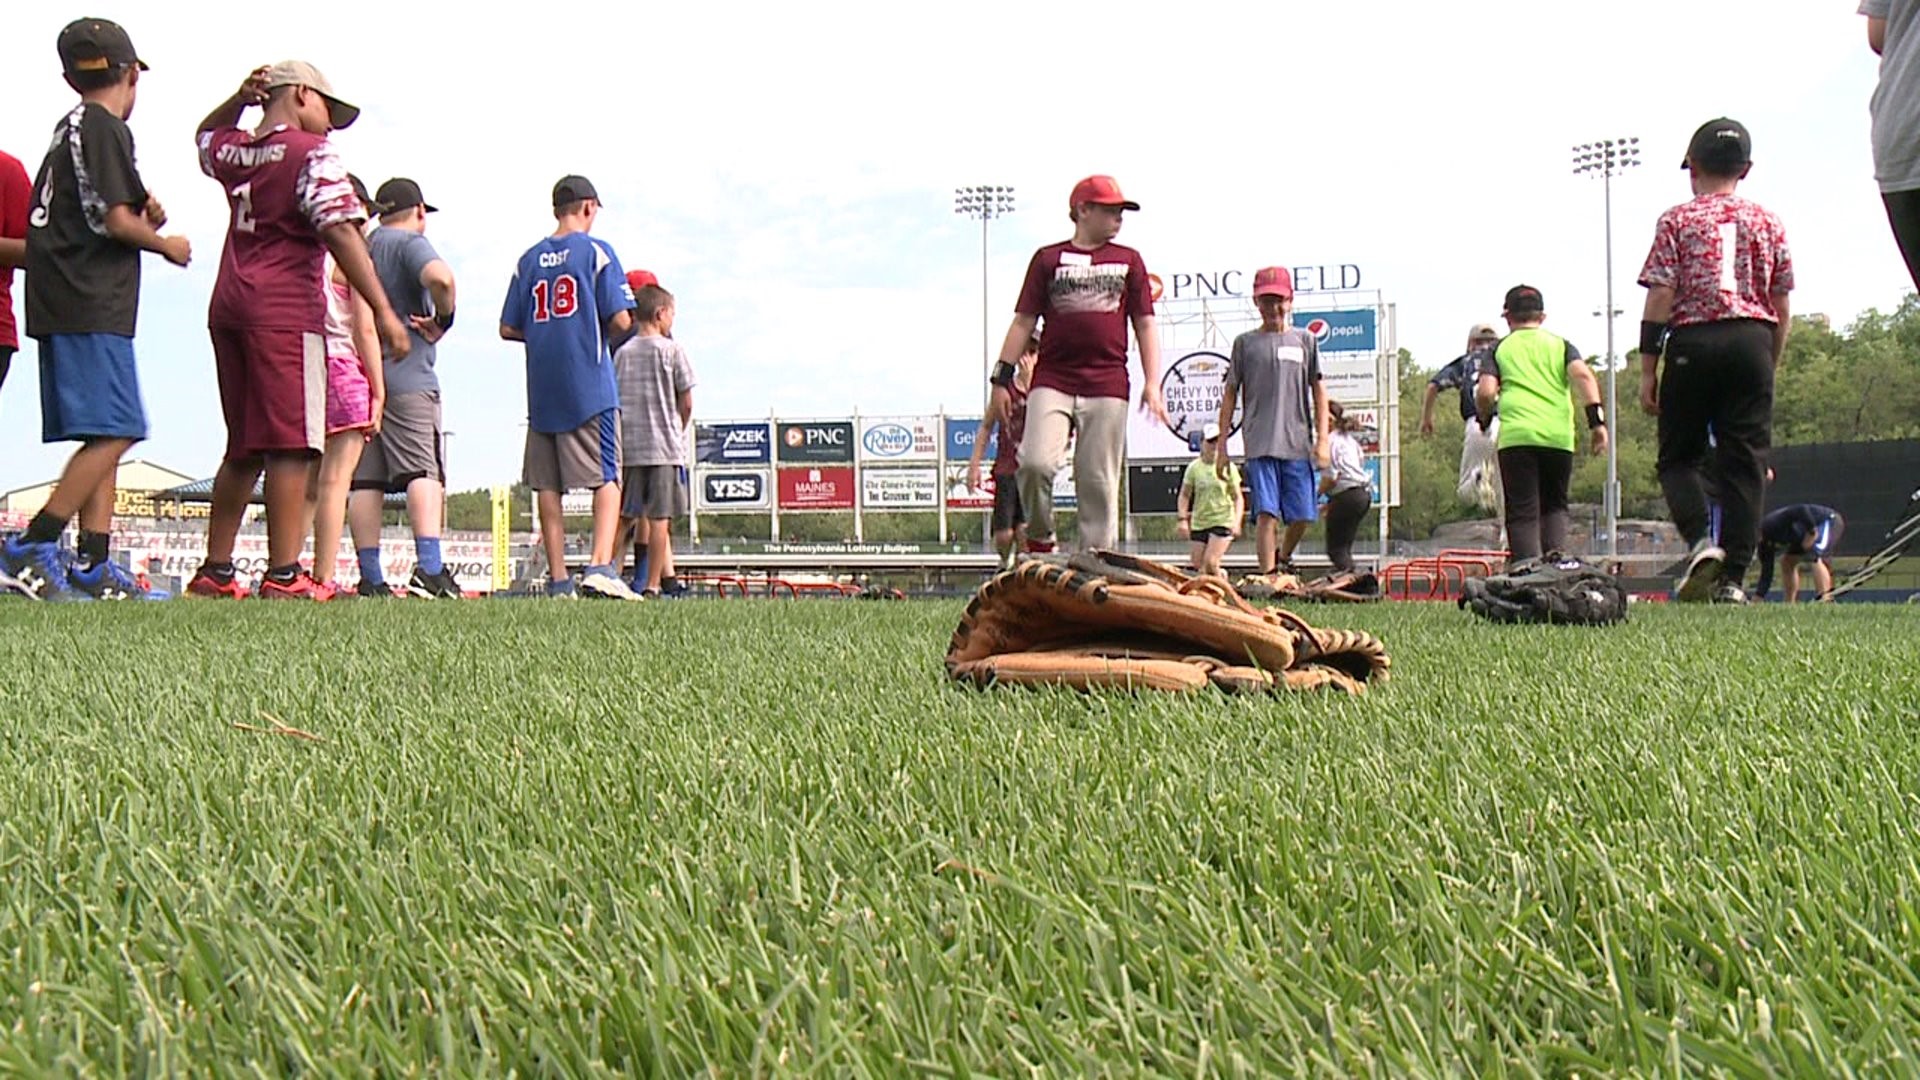 Kids Test Baseball Skills at PNC Field